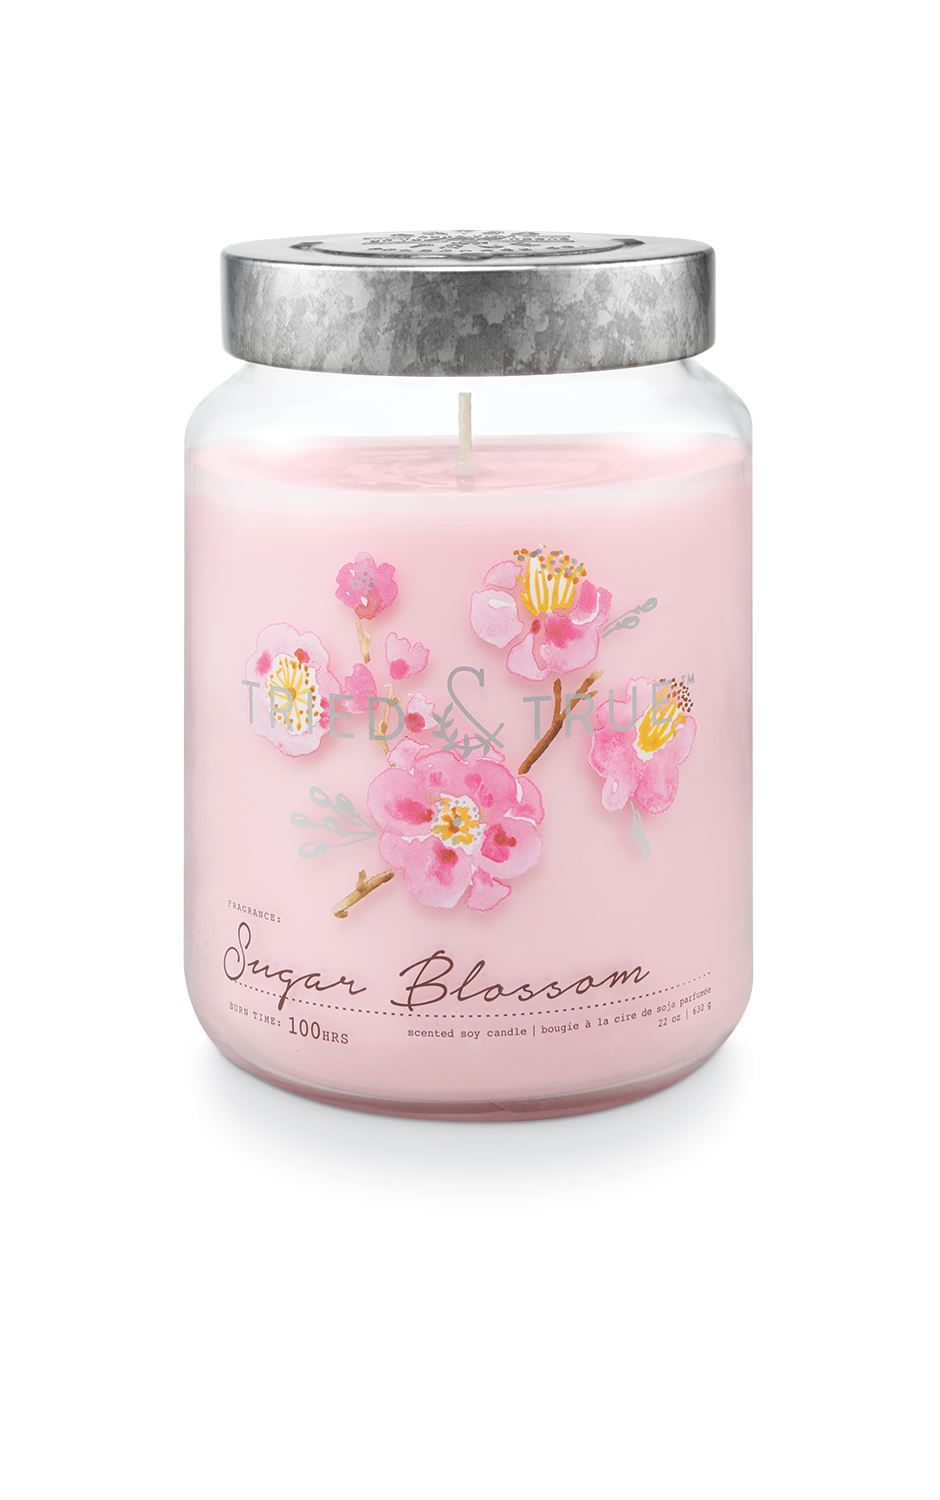 Tried & True Large Jar Candle: Sugar Blossom